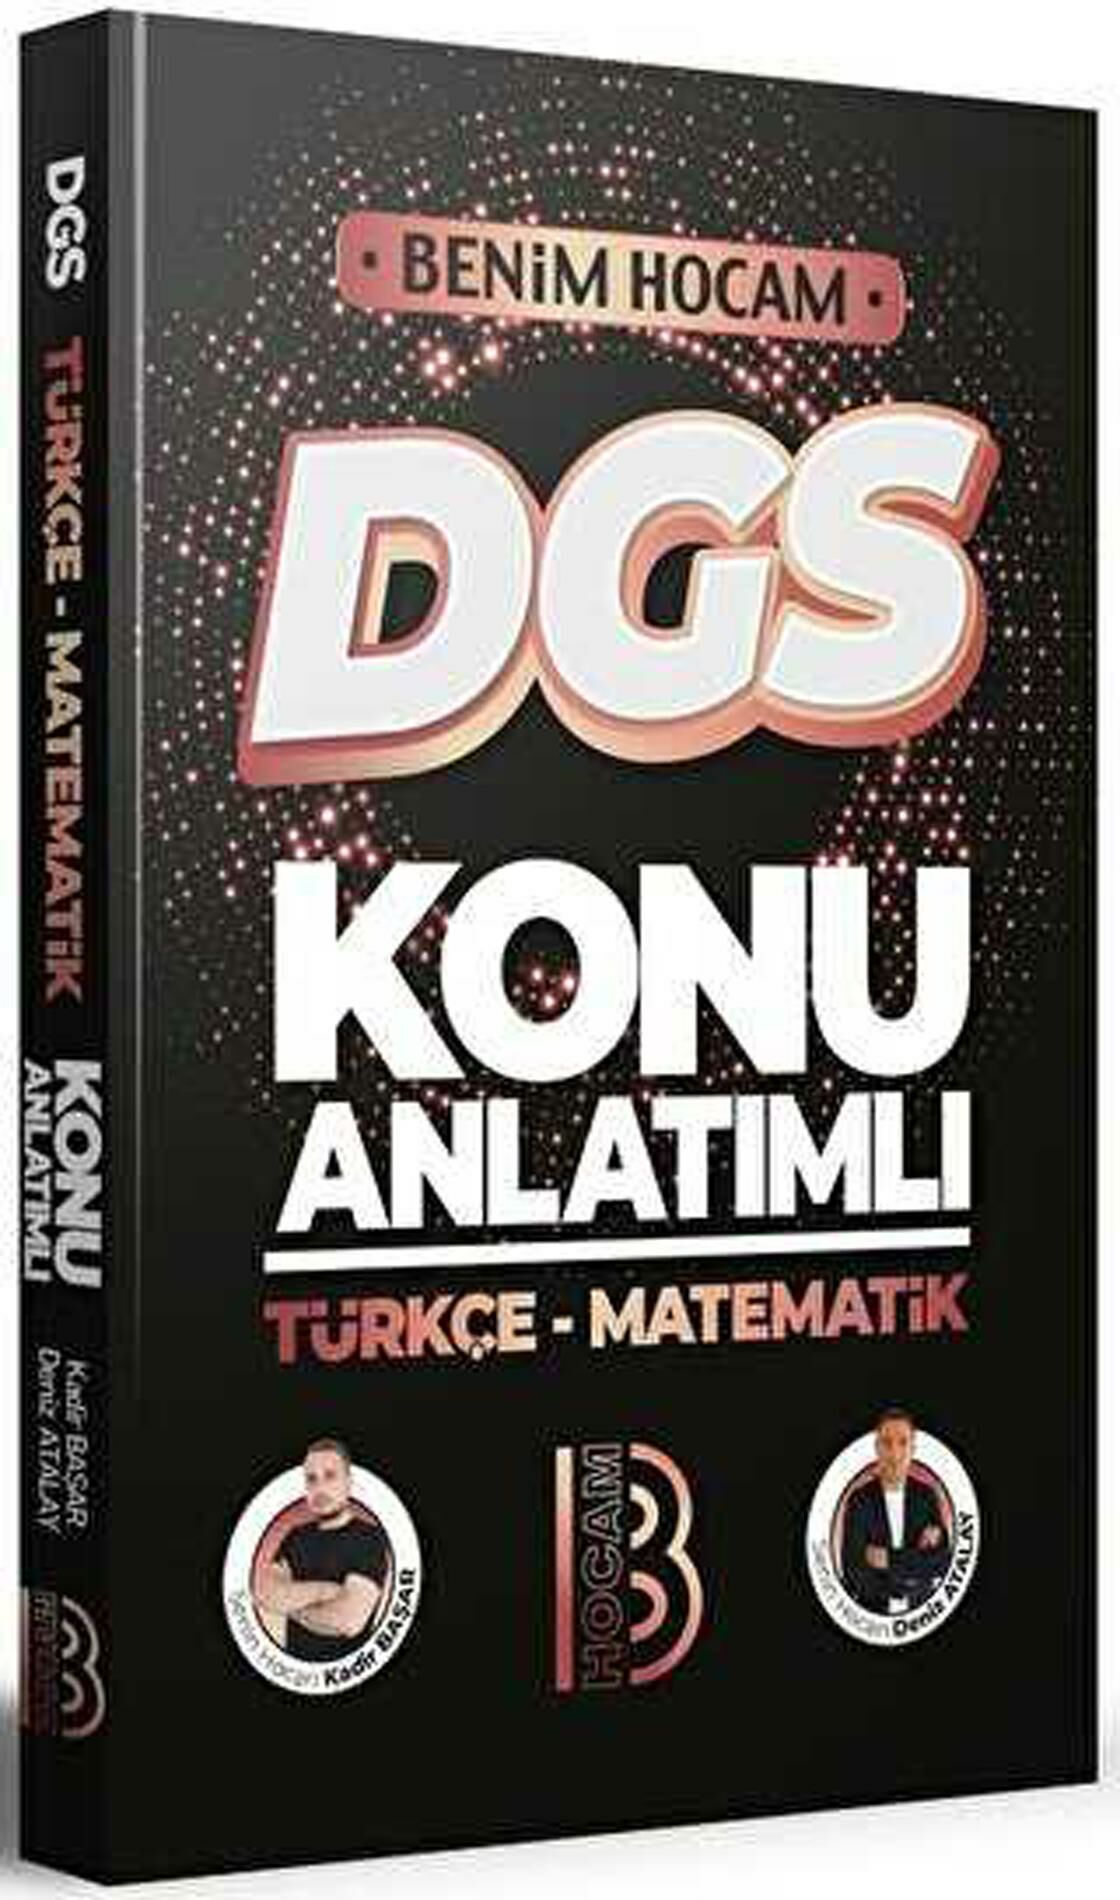 Benim Hocam DGS Türkçe-Matematik Konu Anlatımı 2023